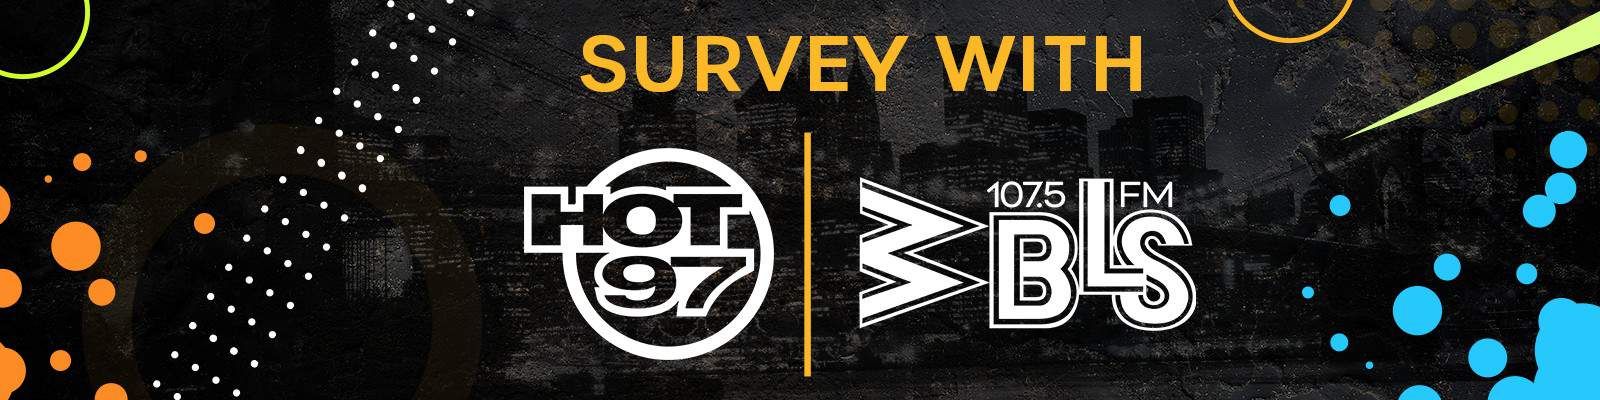 WBLS Survey Contest Rules